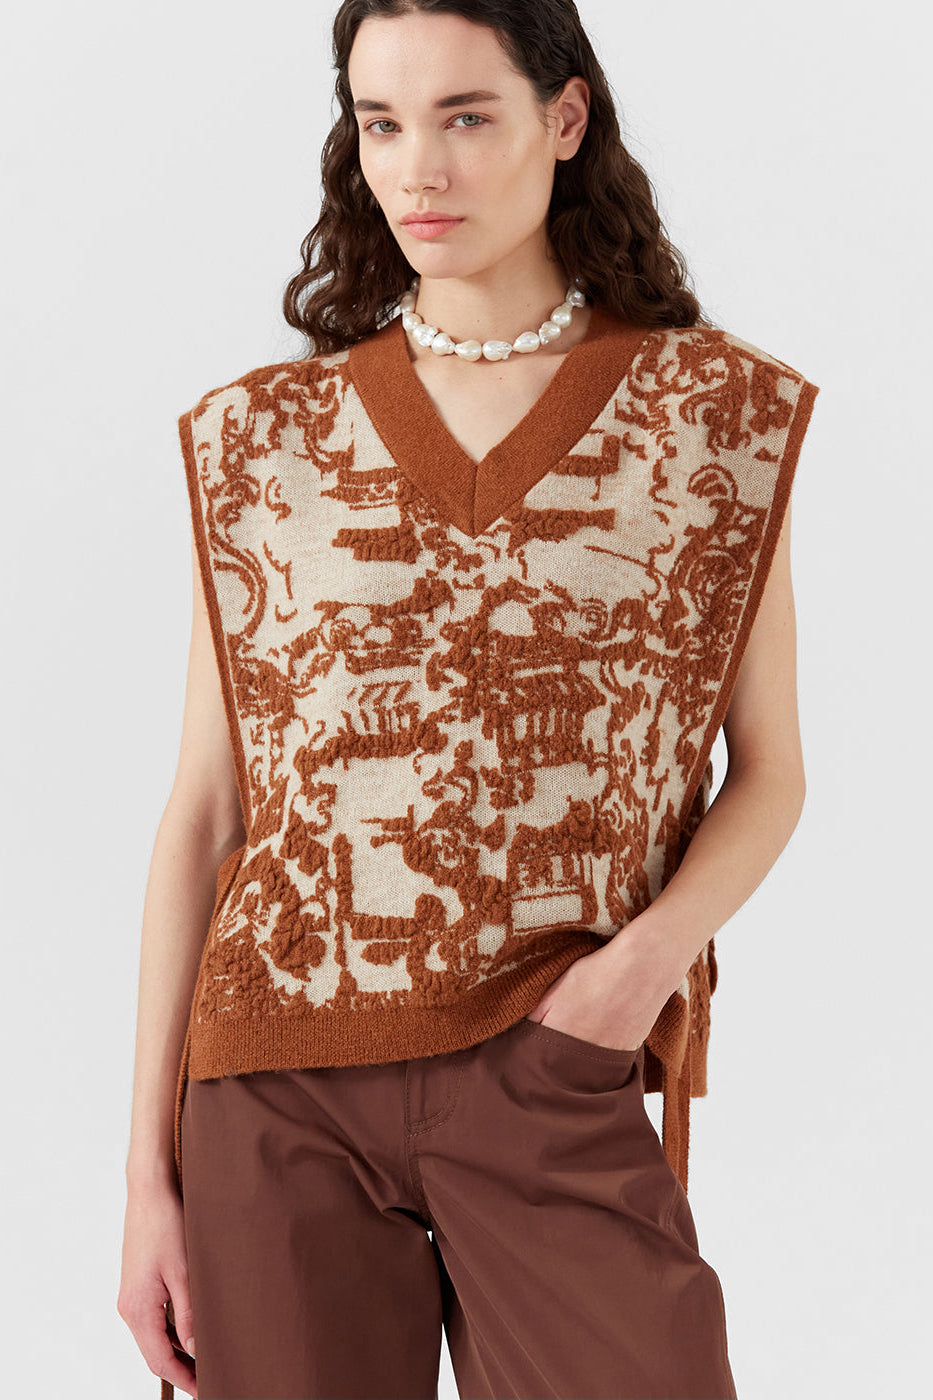 Citro Vest in Brown Jacquard Alpaca Blend by Rejina Pyo